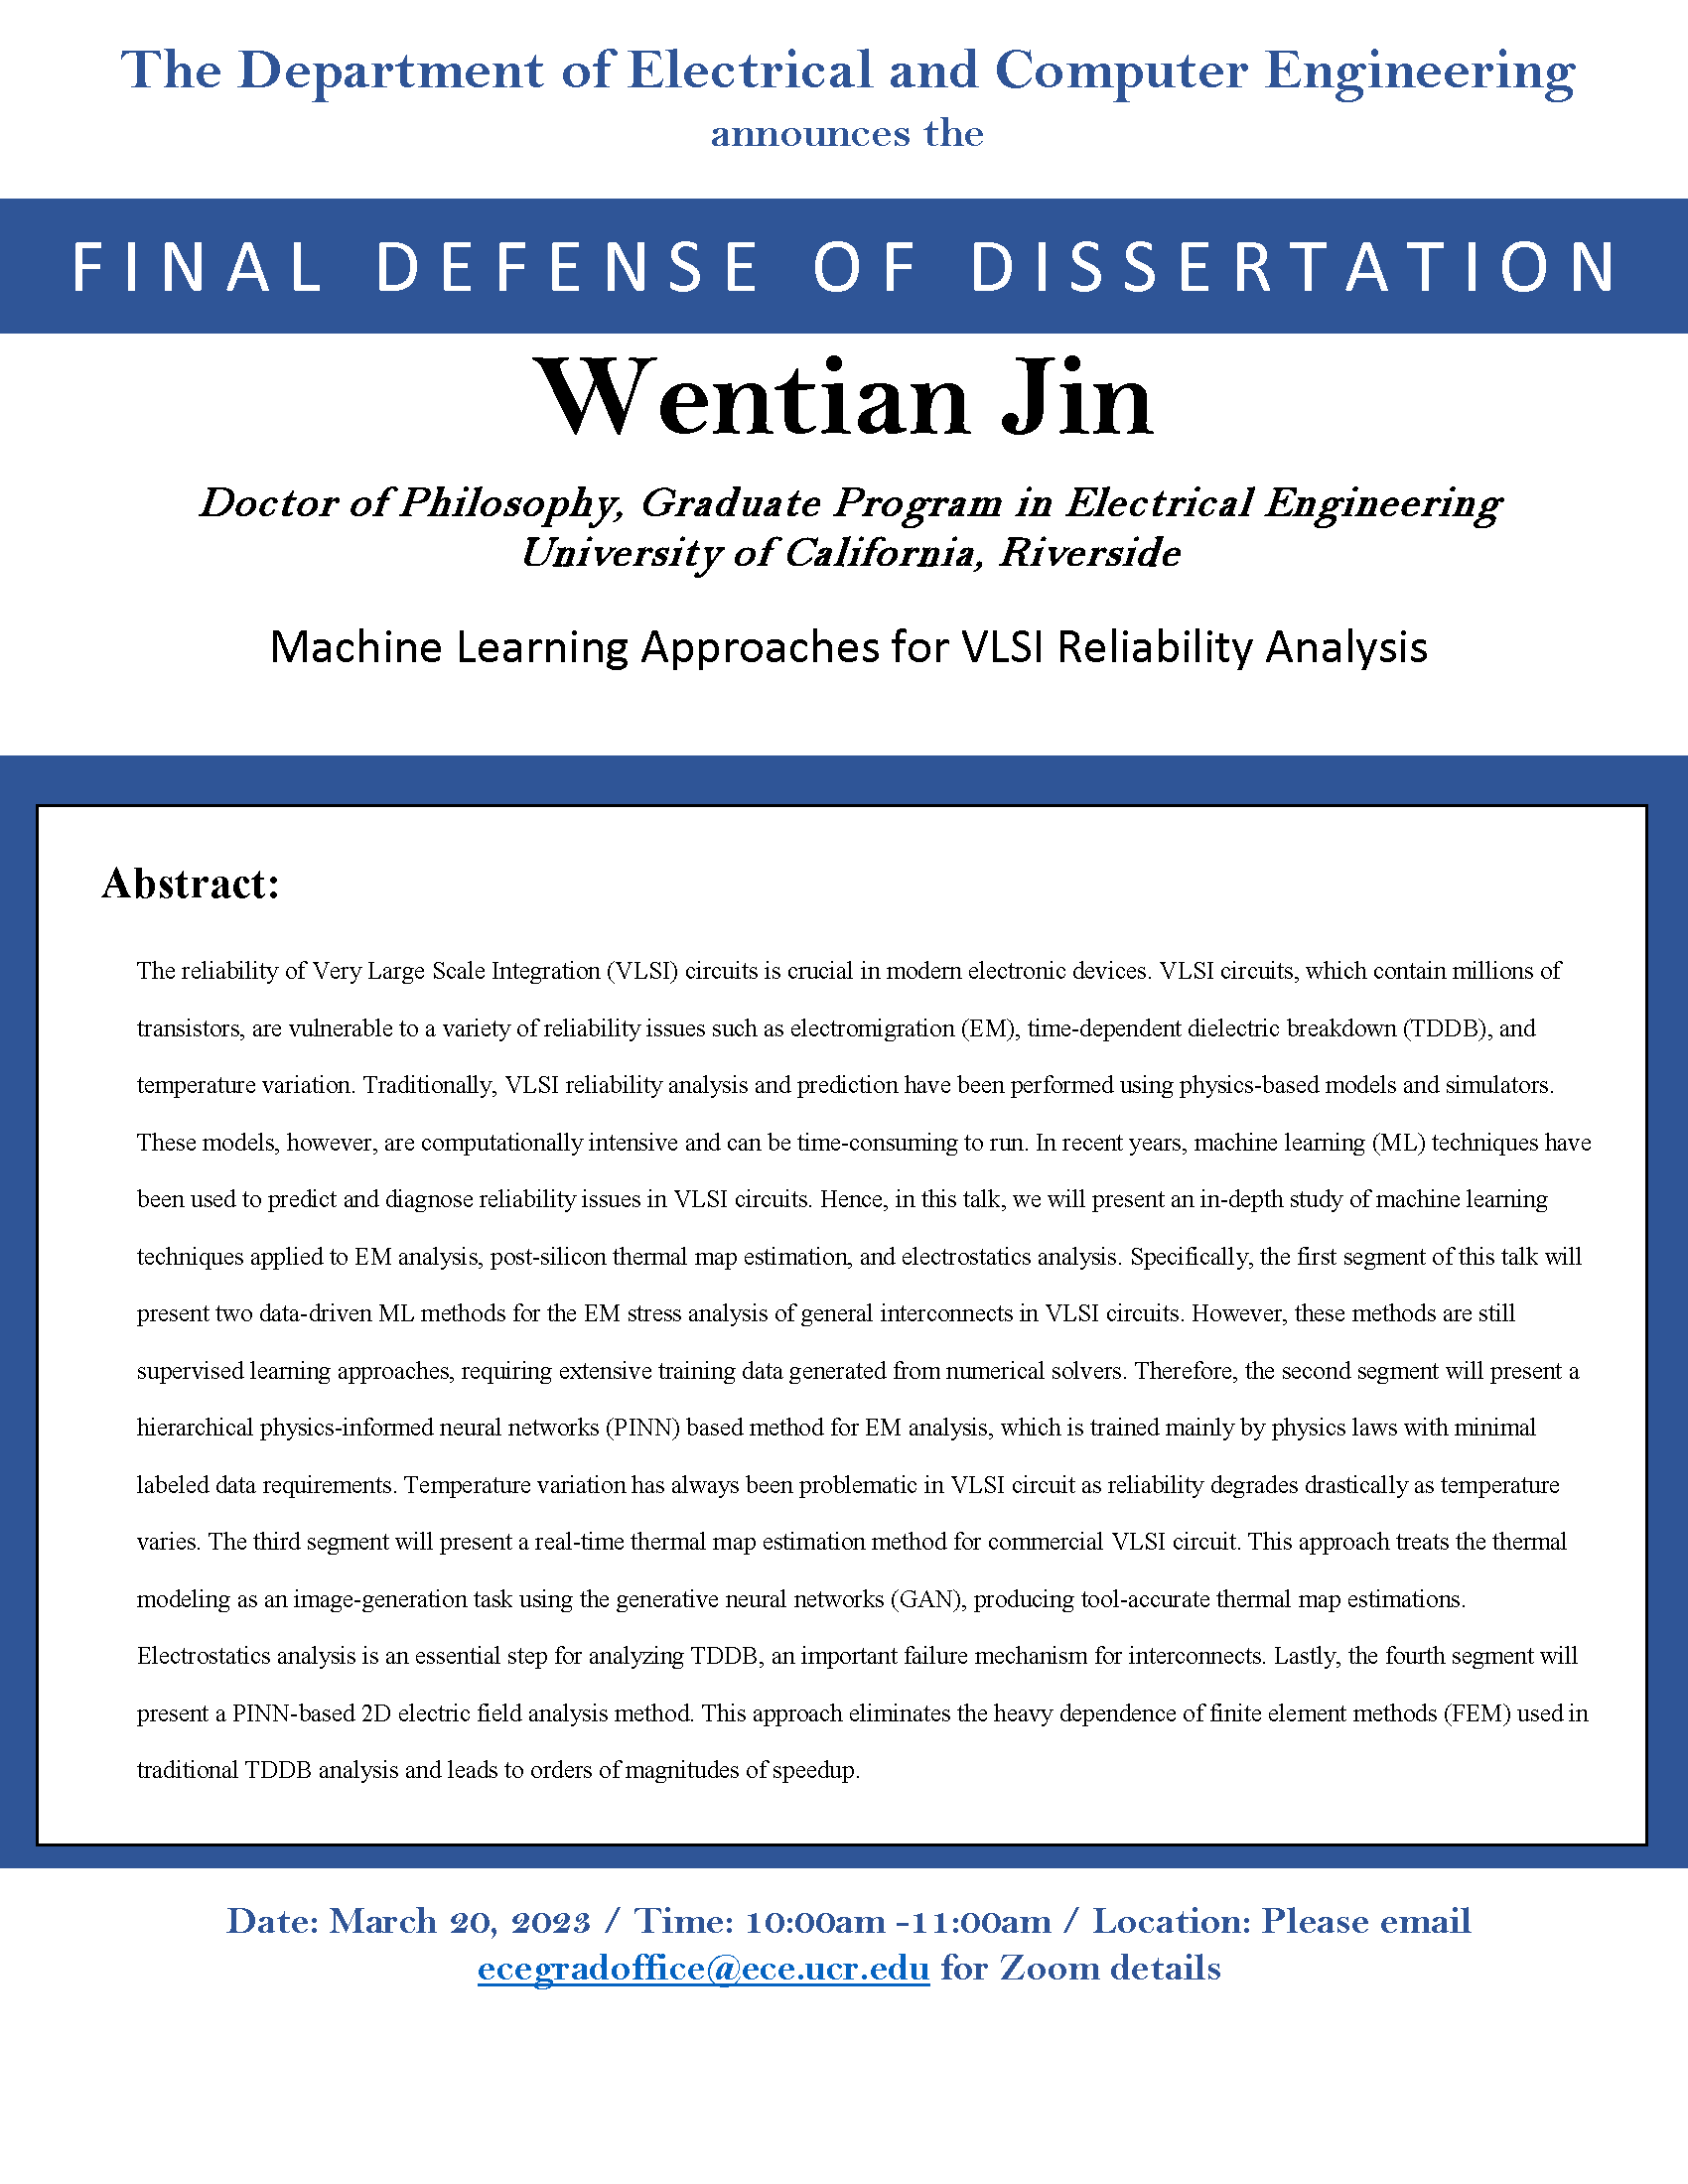 Wentian Jin